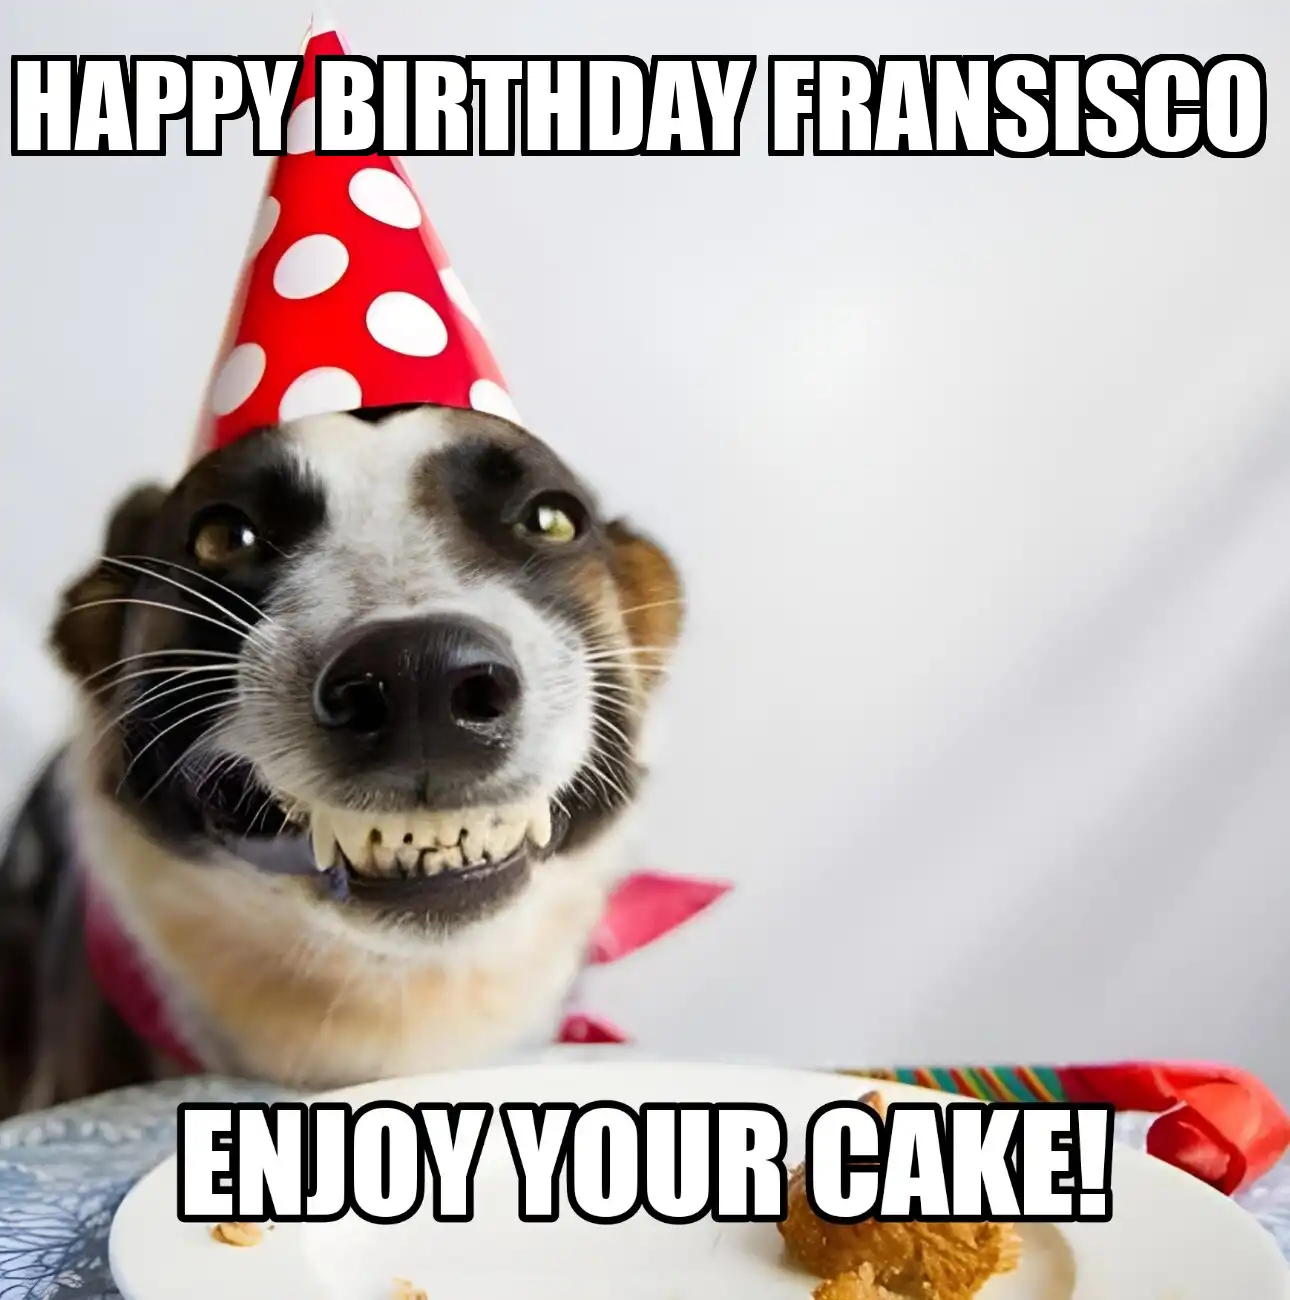 Happy Birthday Fransisco Enjoy Your Cake Dog Meme